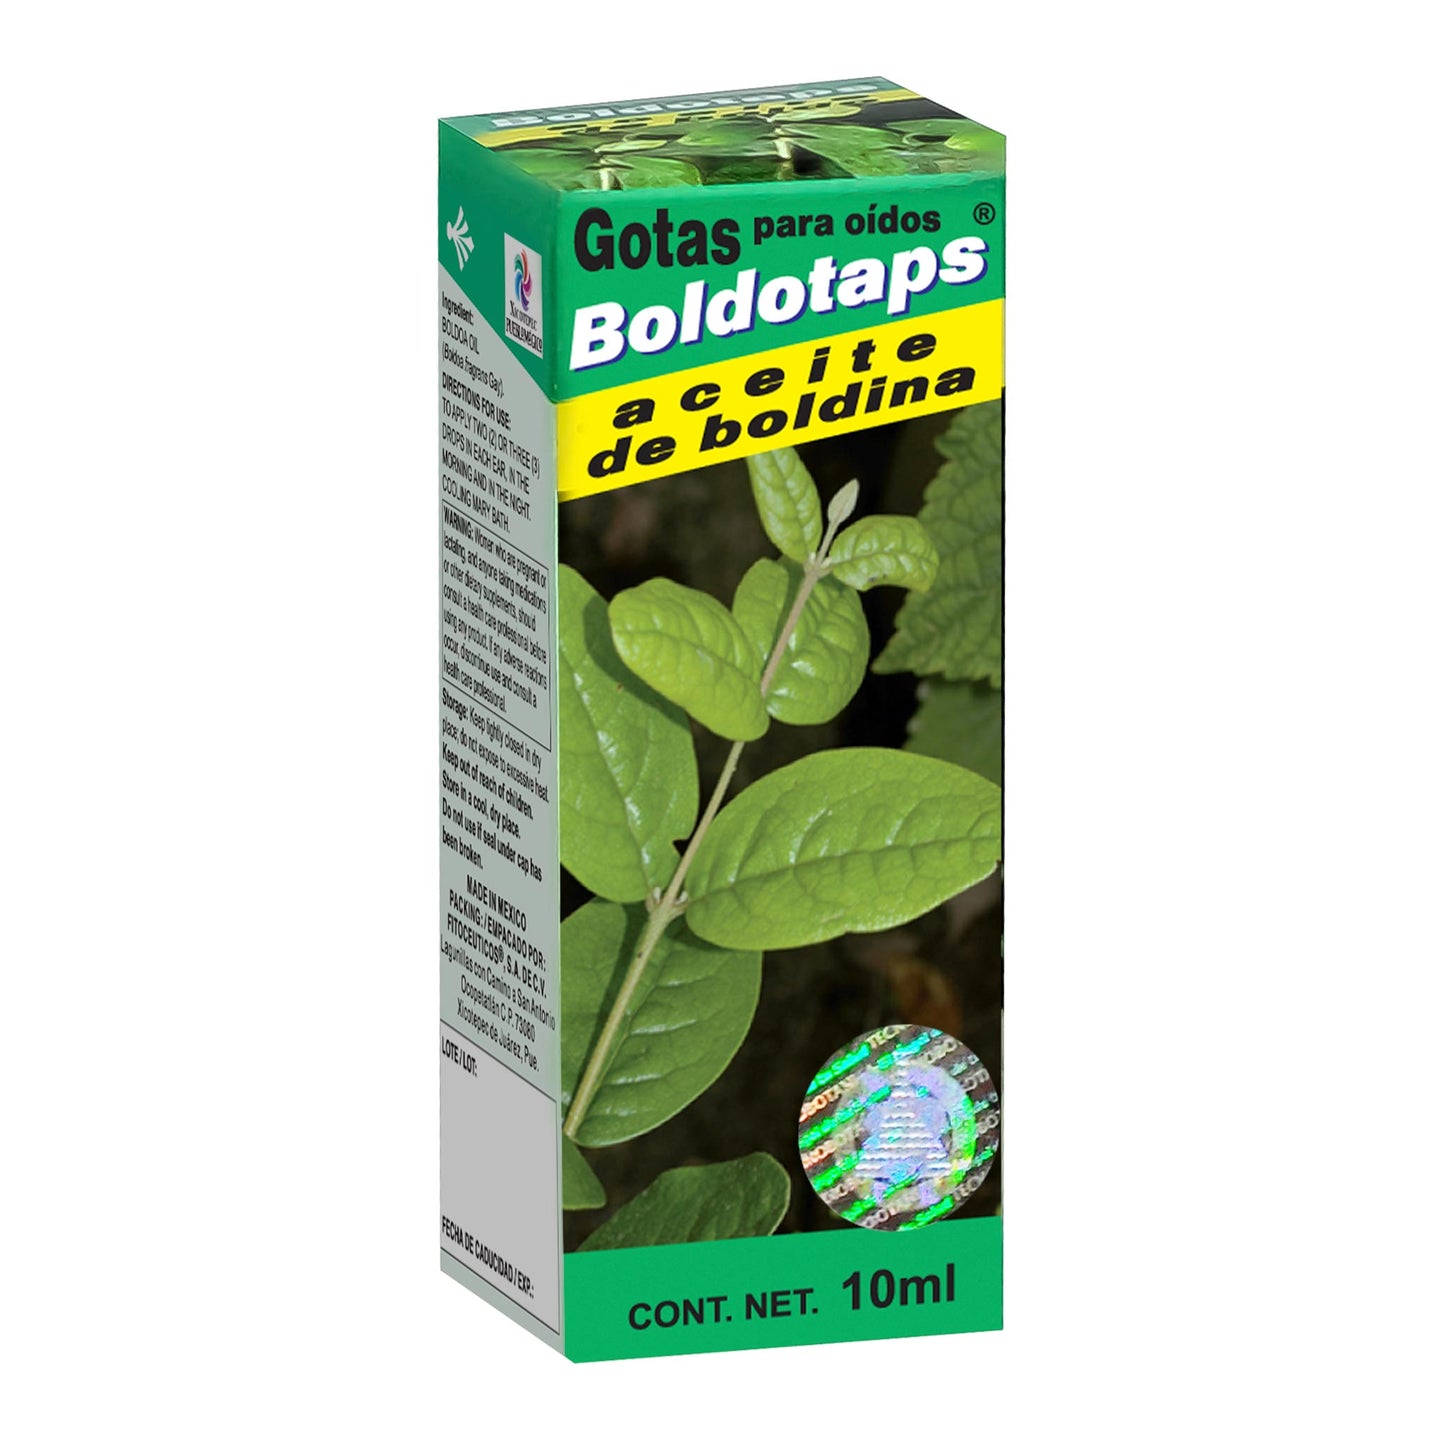 BOLDOTAPS ® aceite otológico 10ml